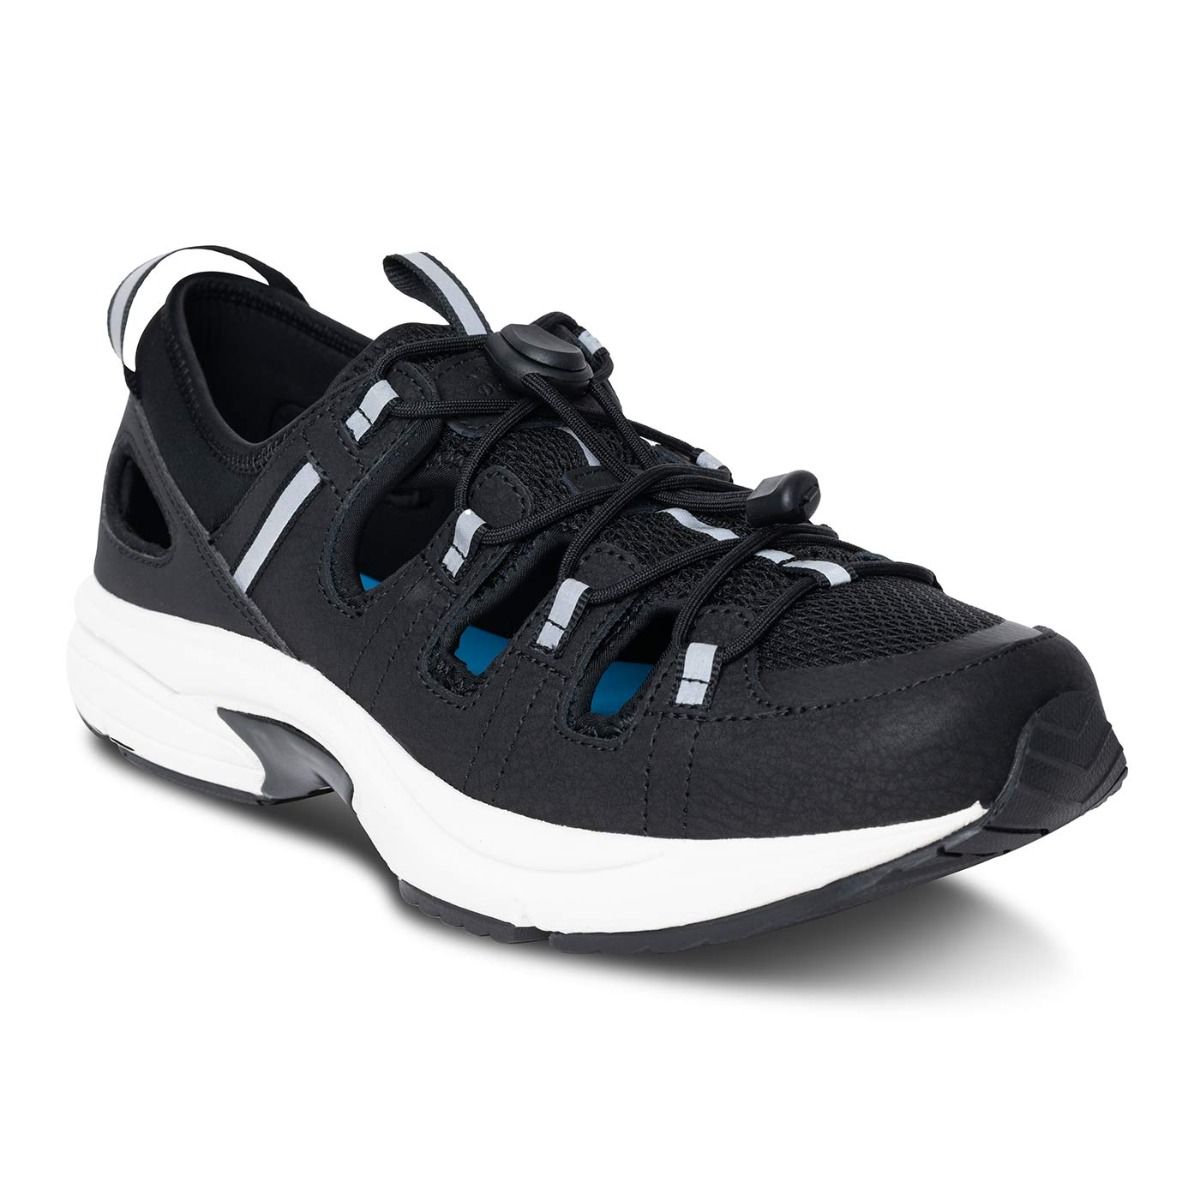 Marco Men’s Diabetic Shoe/Sandal | Dr. Comfort $34.99